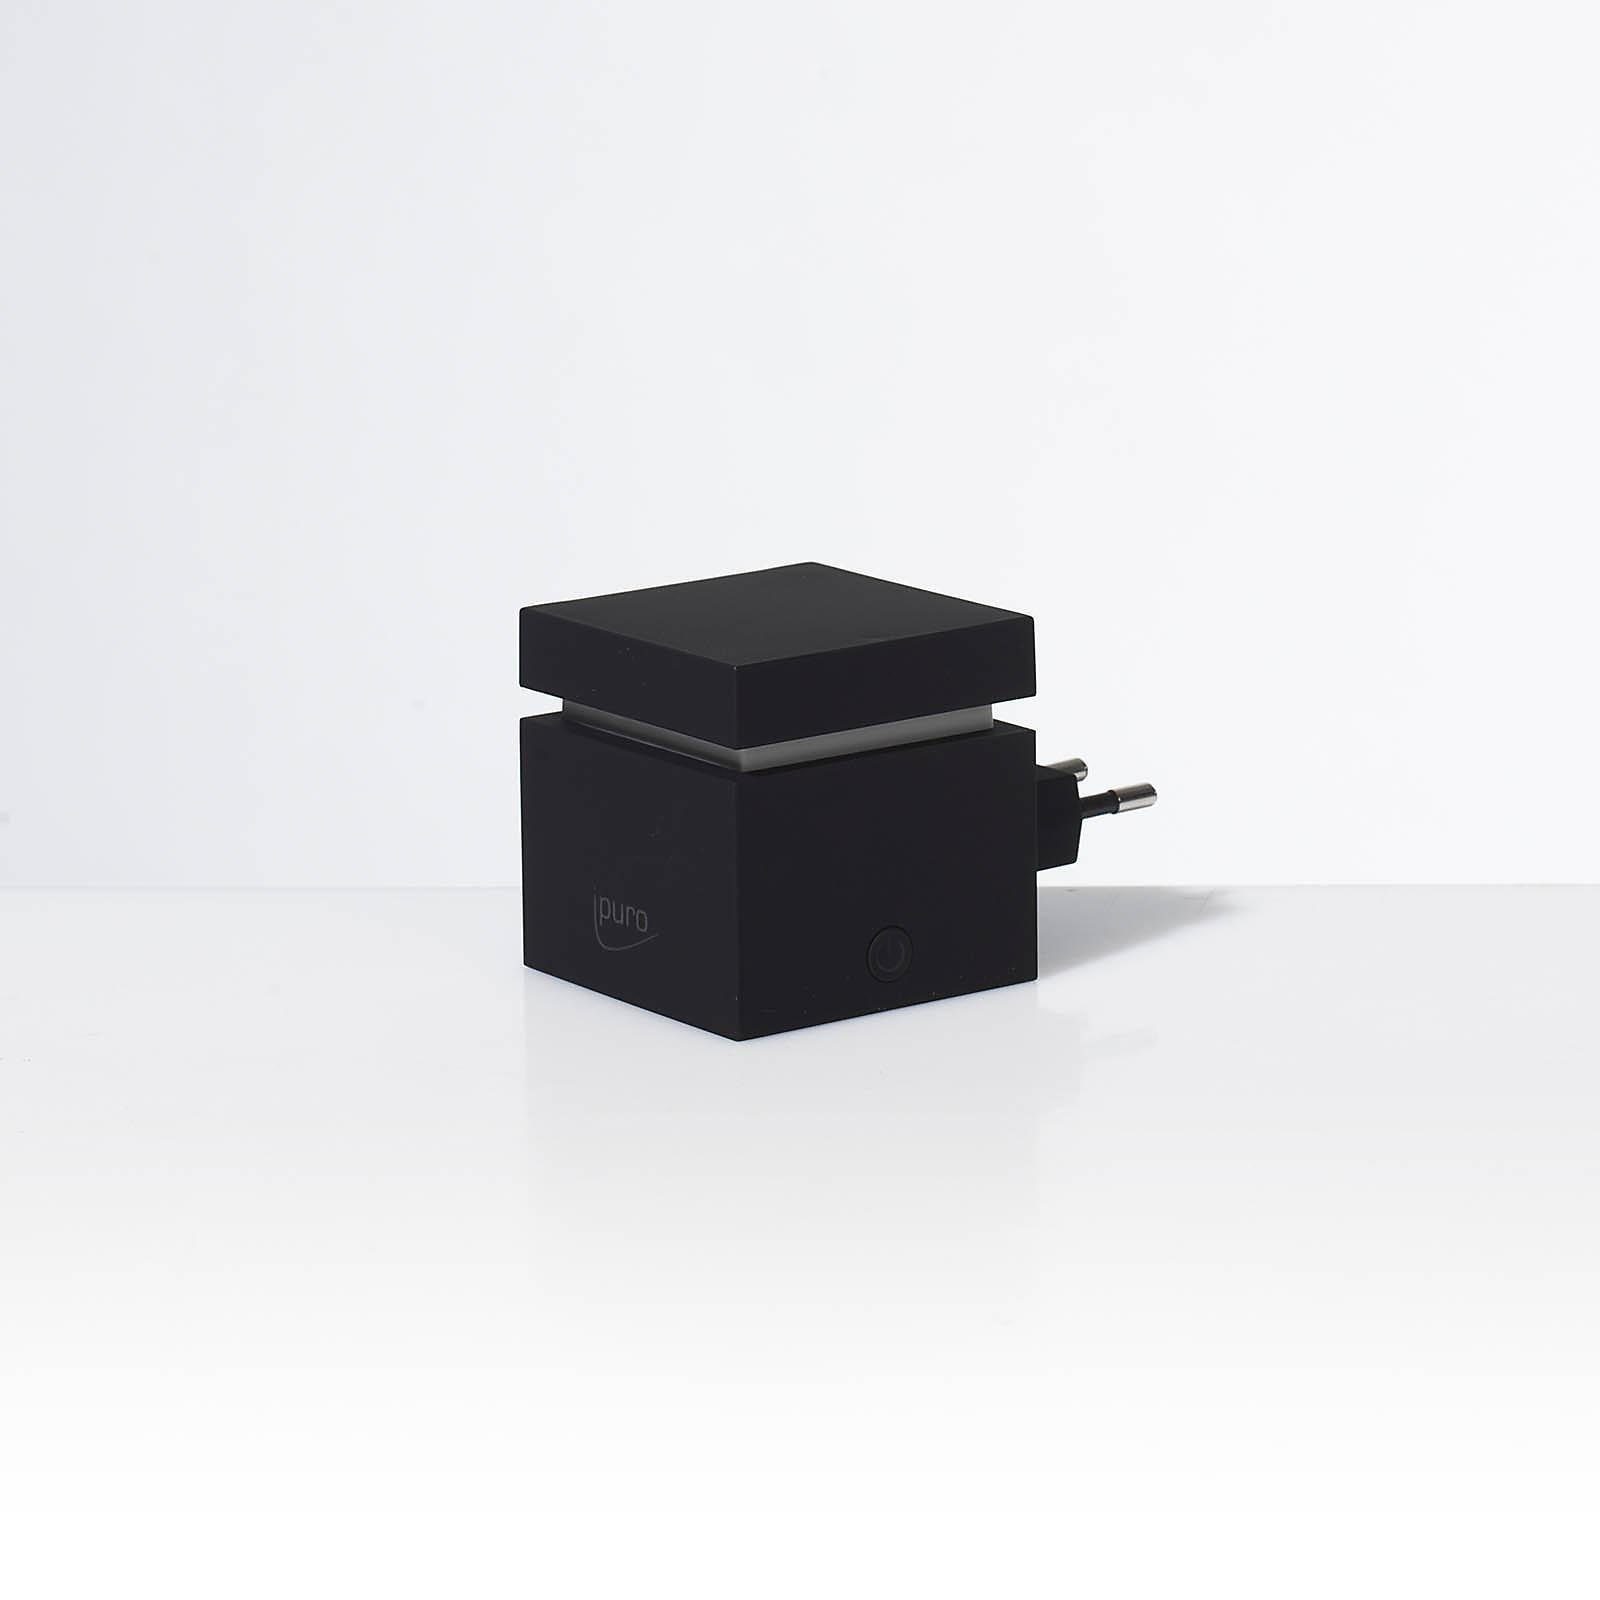 Duftlampe Zentimeter Stück 1 Cube), Elektrischer Plug-In T IPURO Cube aus Elektrischer 5.5 5.5 9.3 St., H Aroma-Diffusor 1 Zentimeter, Zentimeter, Aroma-Diffusor, B (Packung, Aroma-Diffusor Plug-In